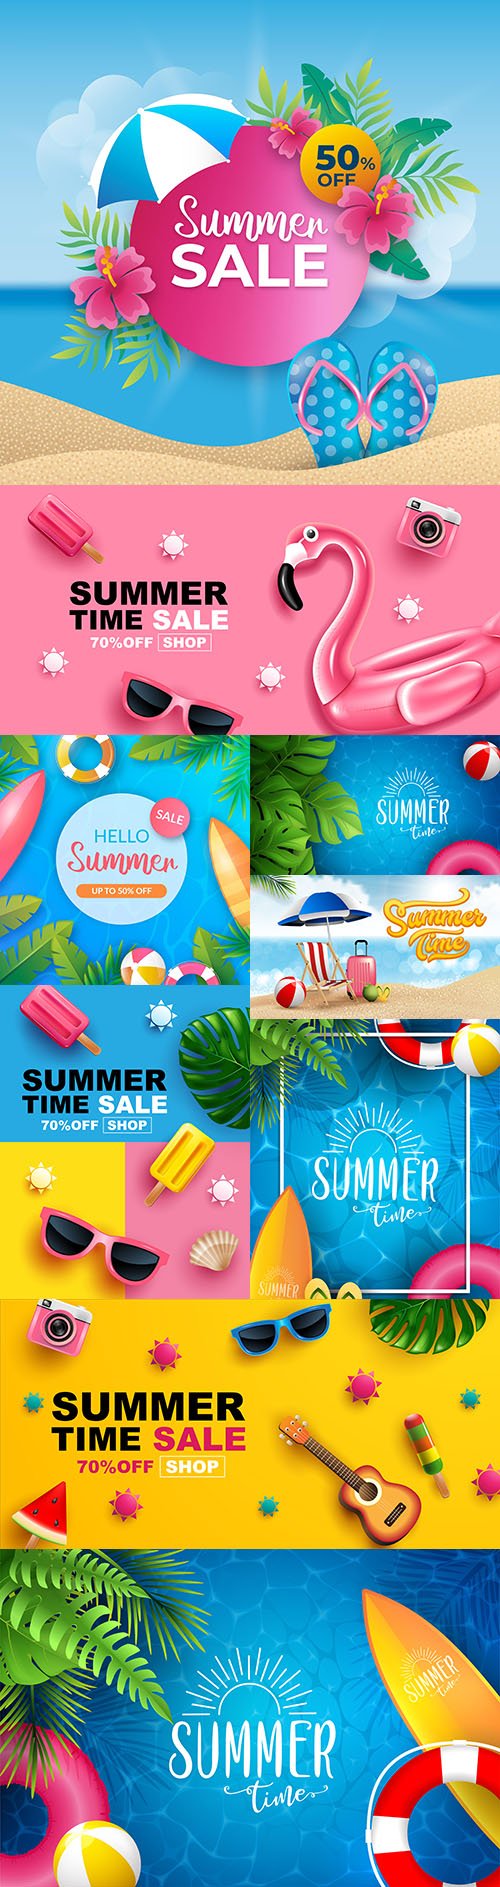 Summer sale banner layout design illustrations